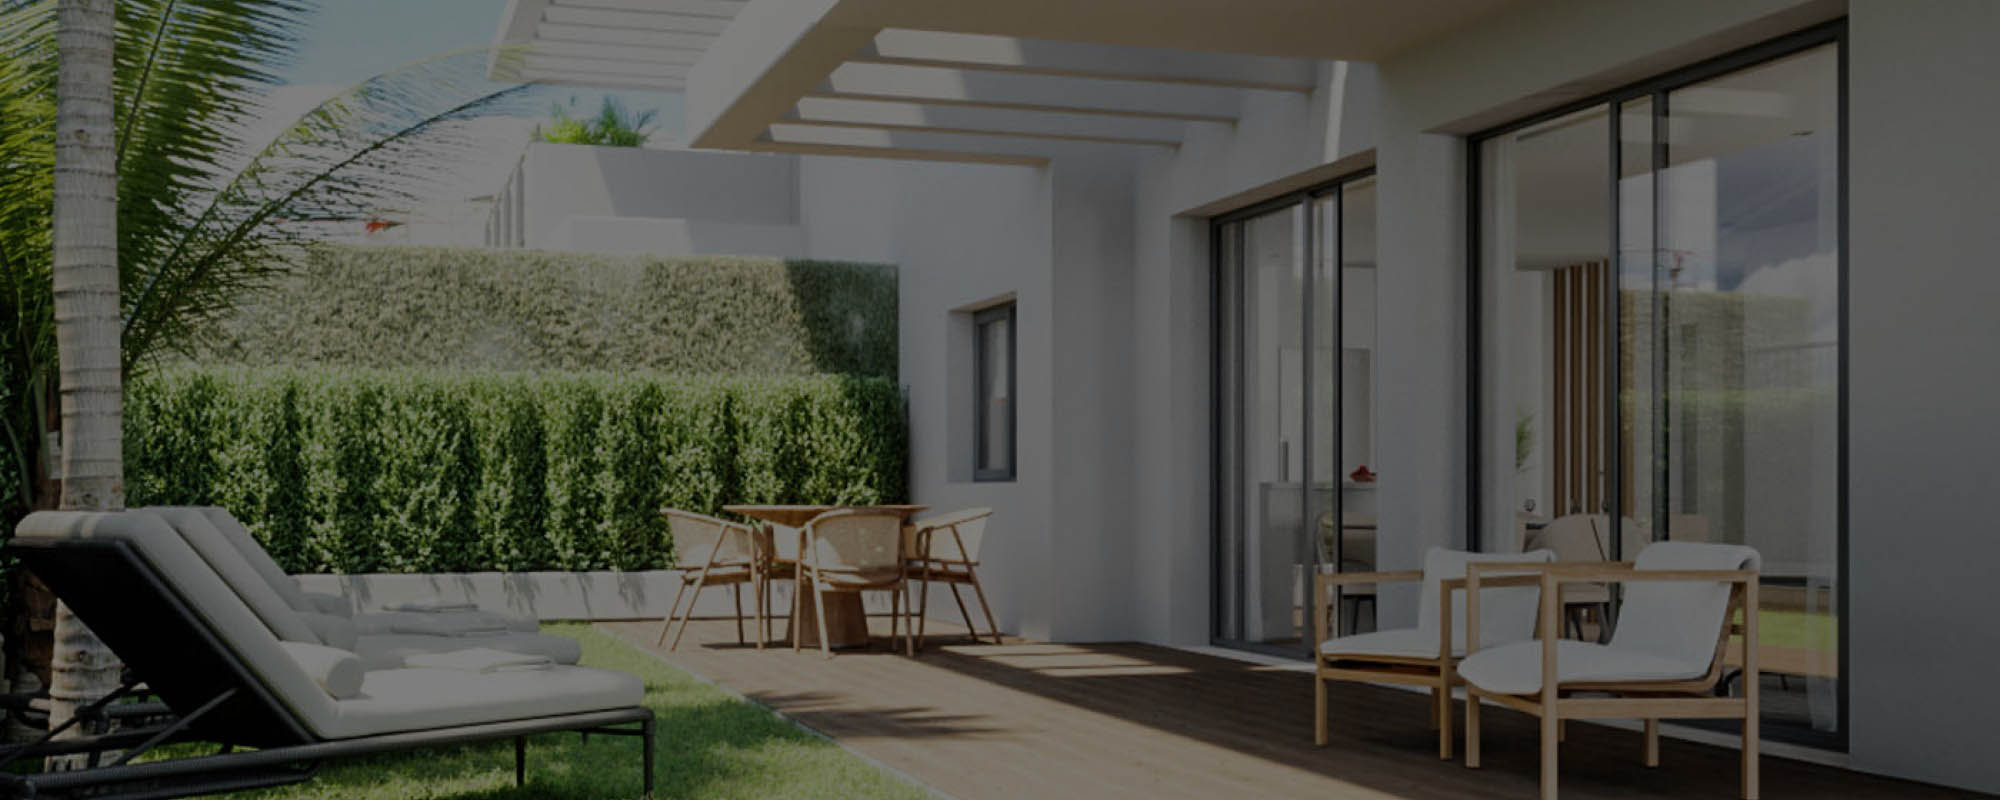 Renders 3D de interiores para una promoción inmobiliaria